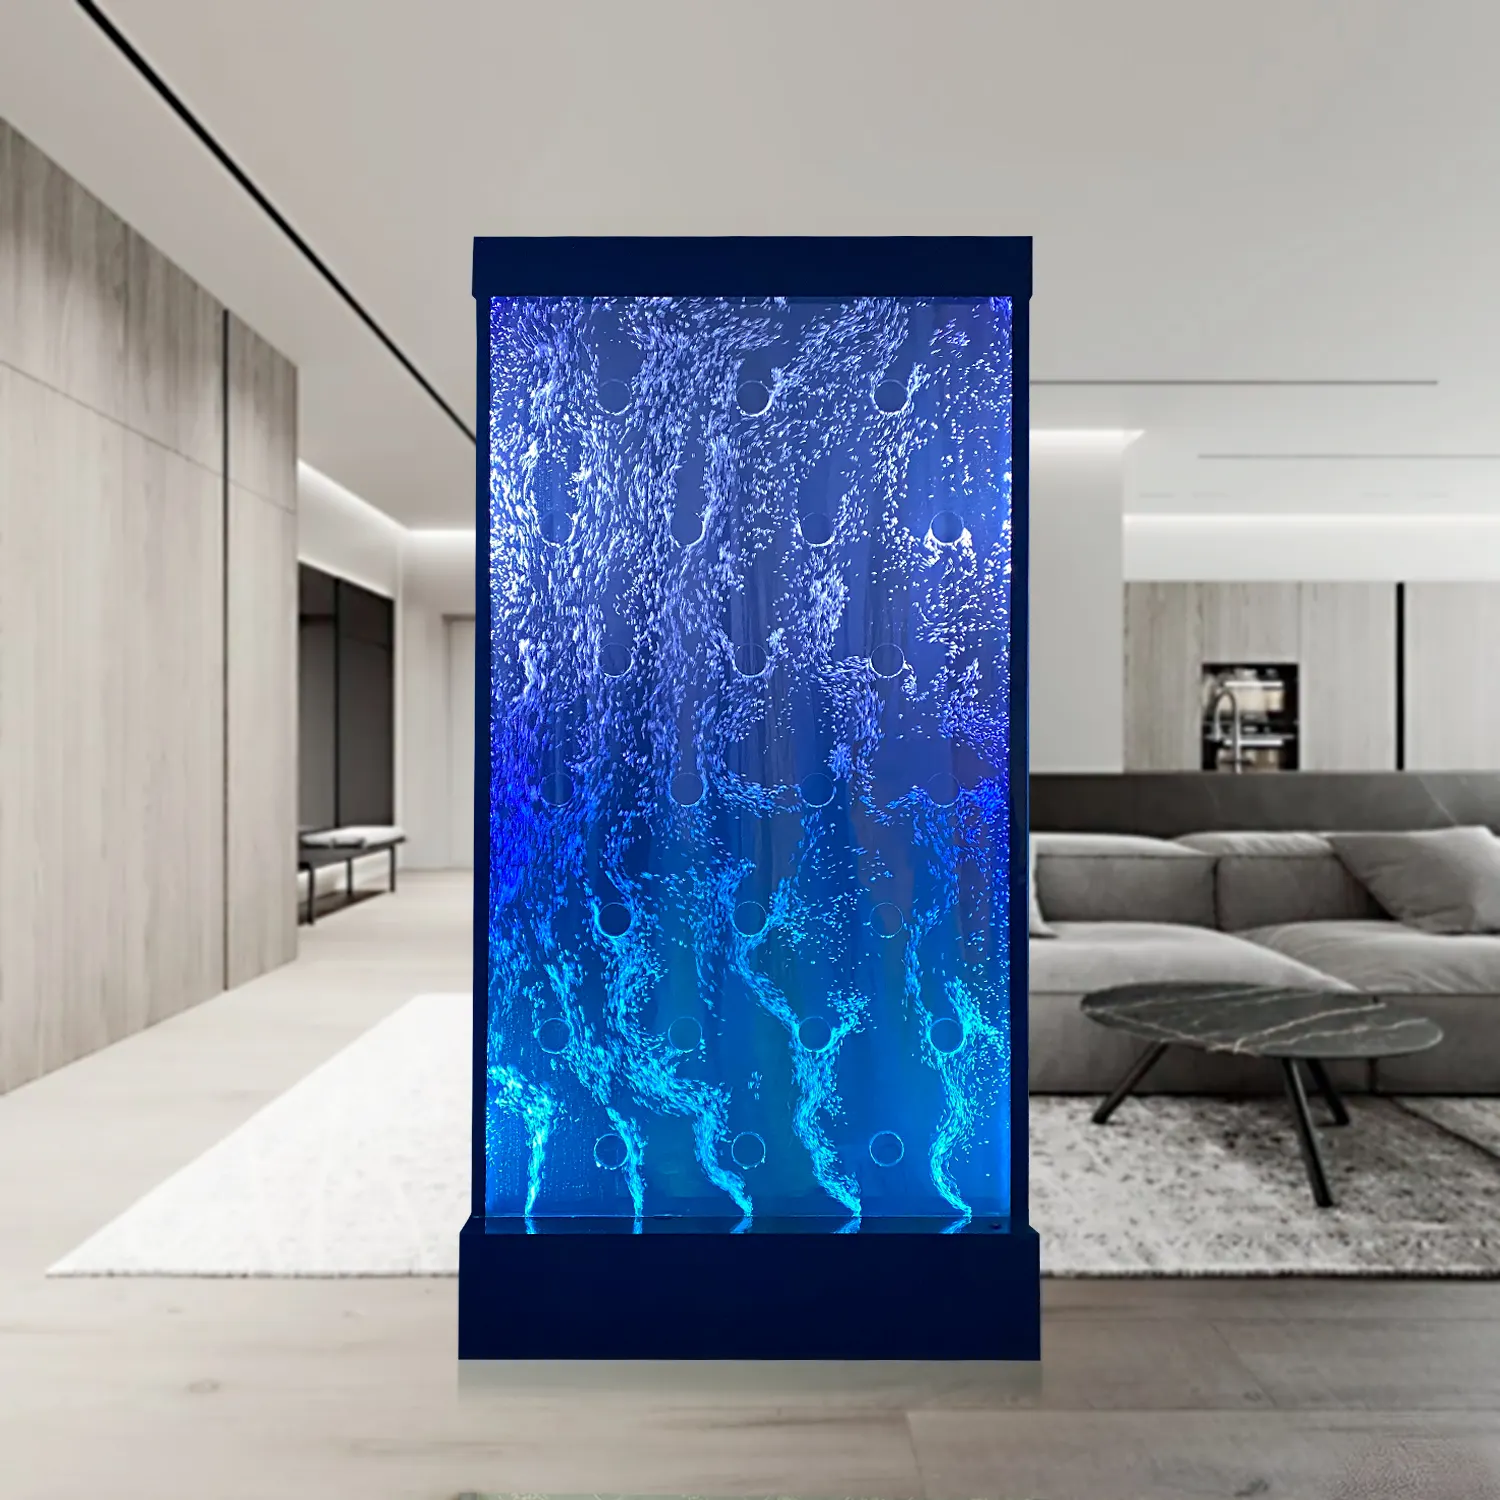 Venda direta da fábrica LED brilhante característica da água bolha decoração da parede do salão de beleza